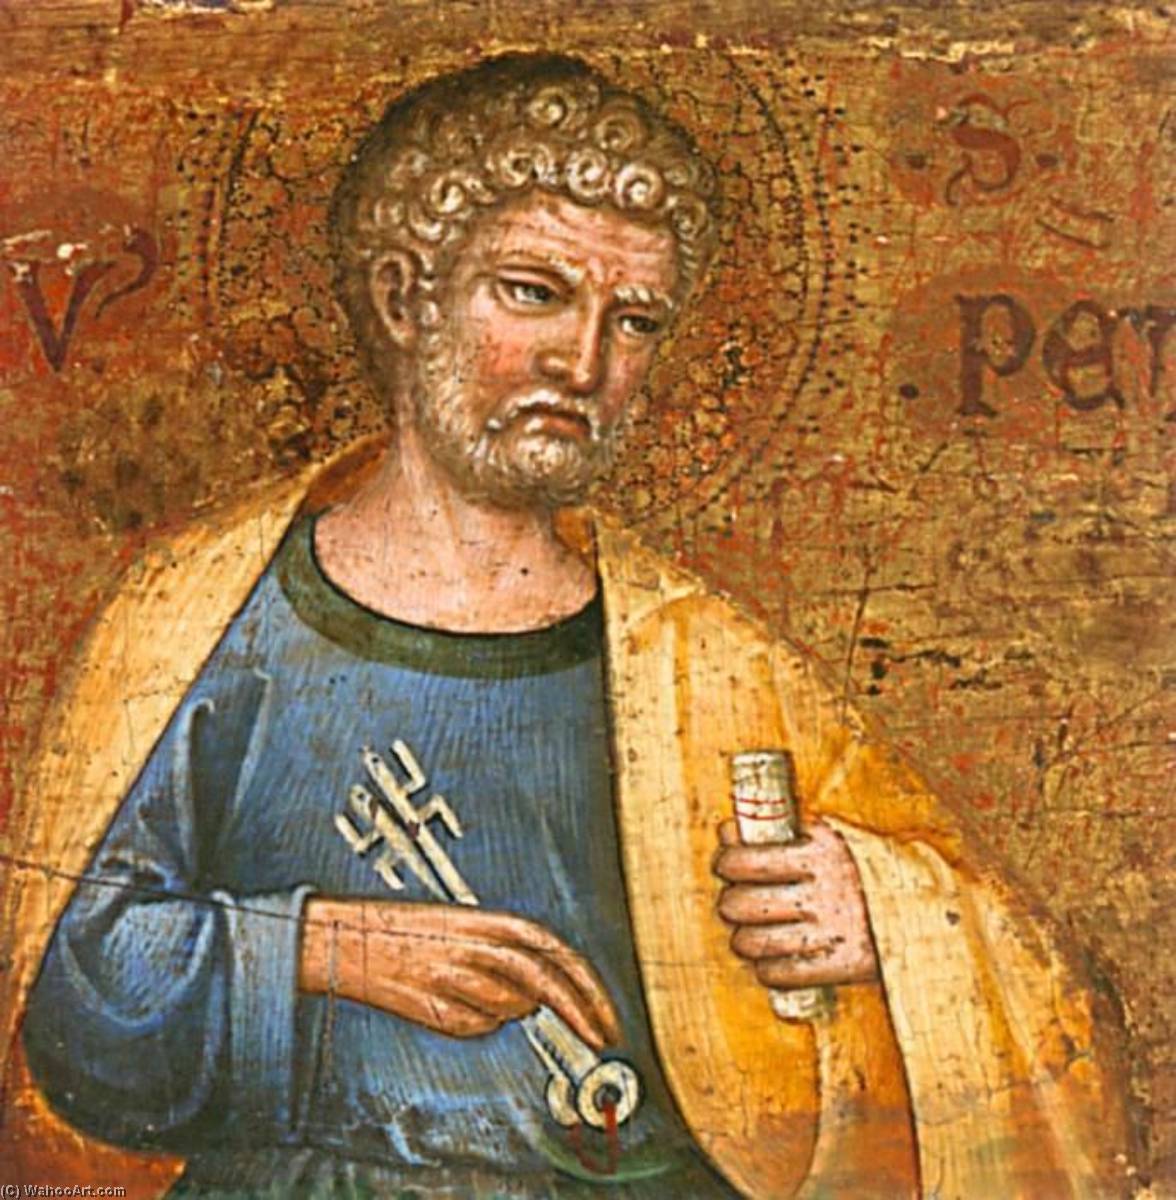 WikiOO.org - Encyclopedia of Fine Arts - Maleri, Artwork Meneghello Di Giovanni De' Canali - Altarpiece of the Virgin Mary (predella fragment, detail)